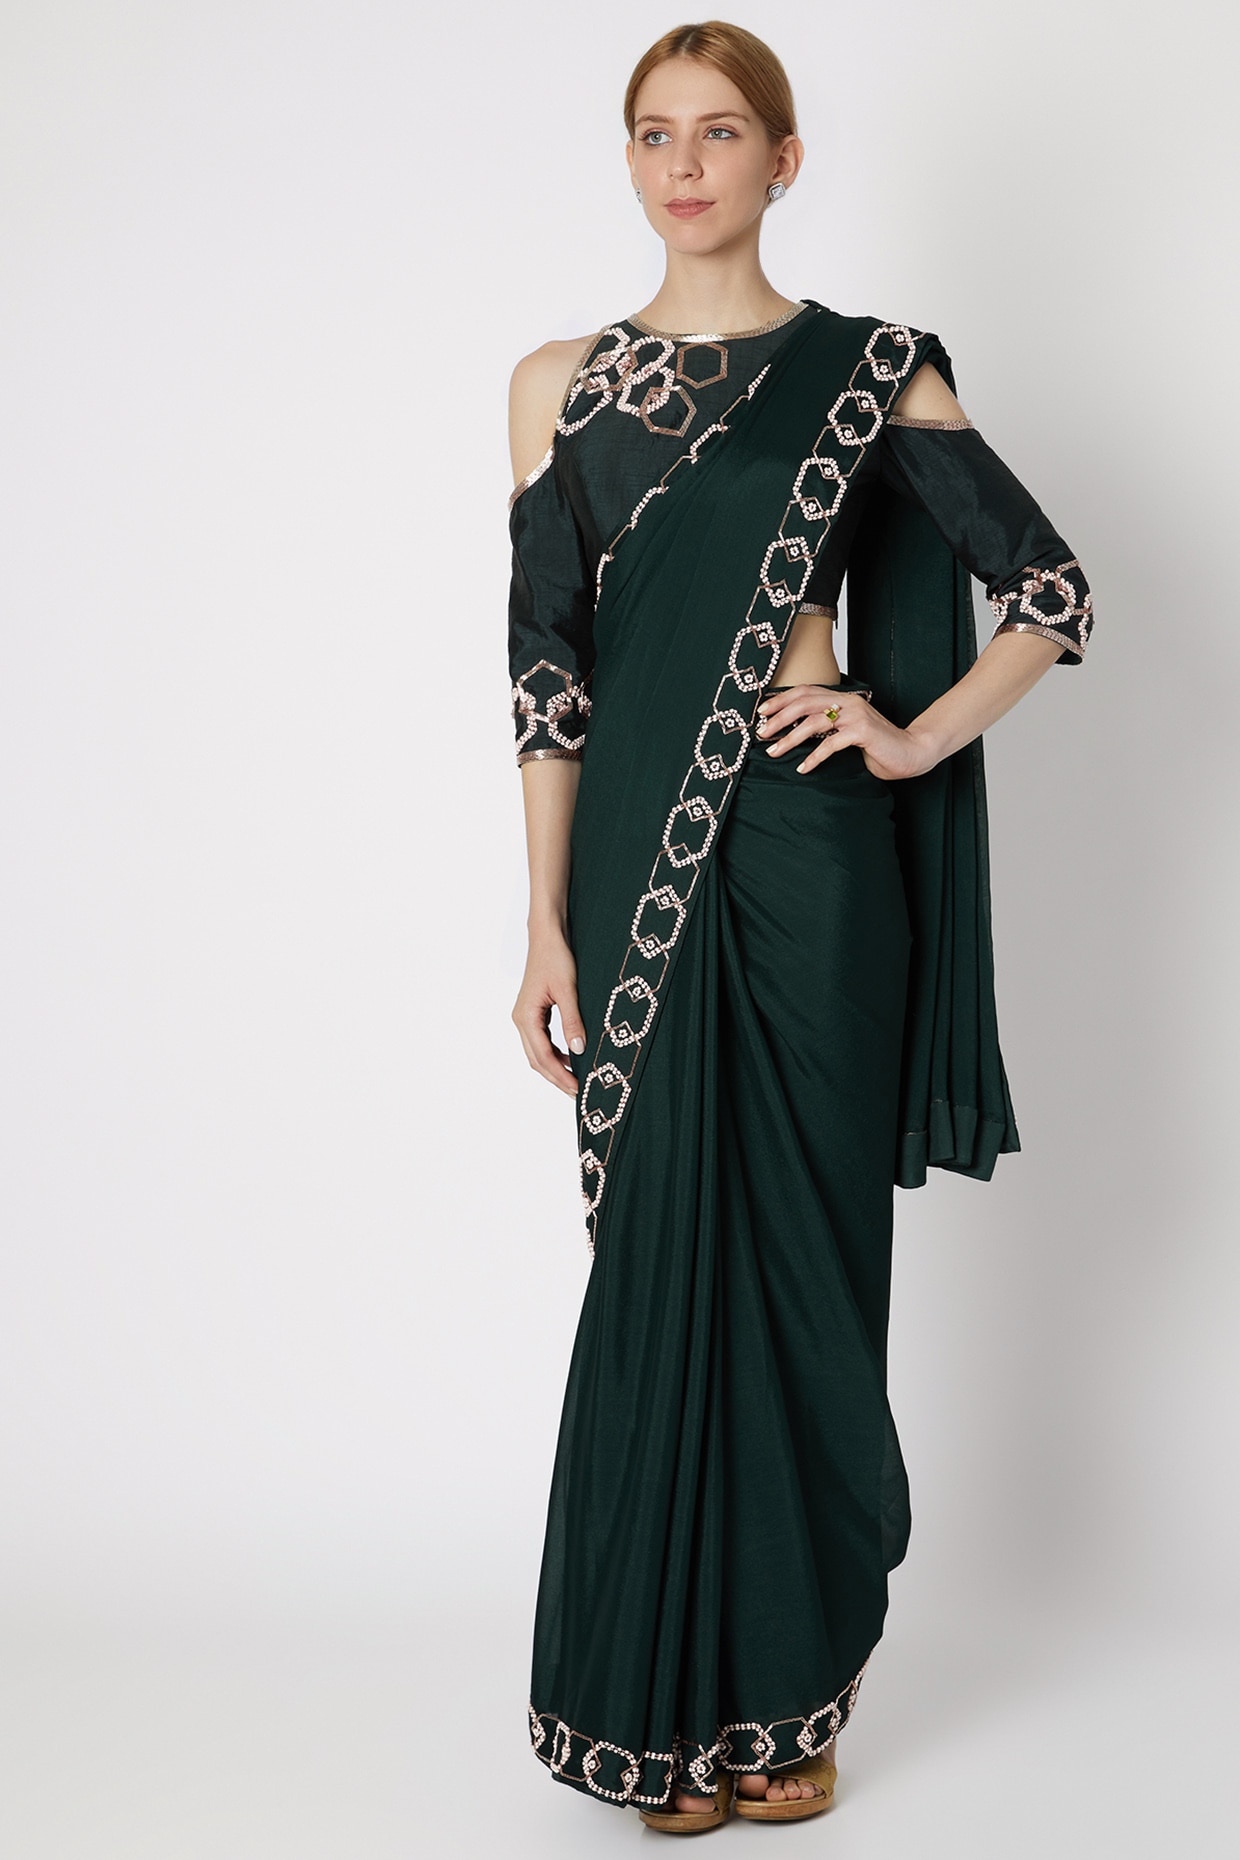 saree lehenga gown